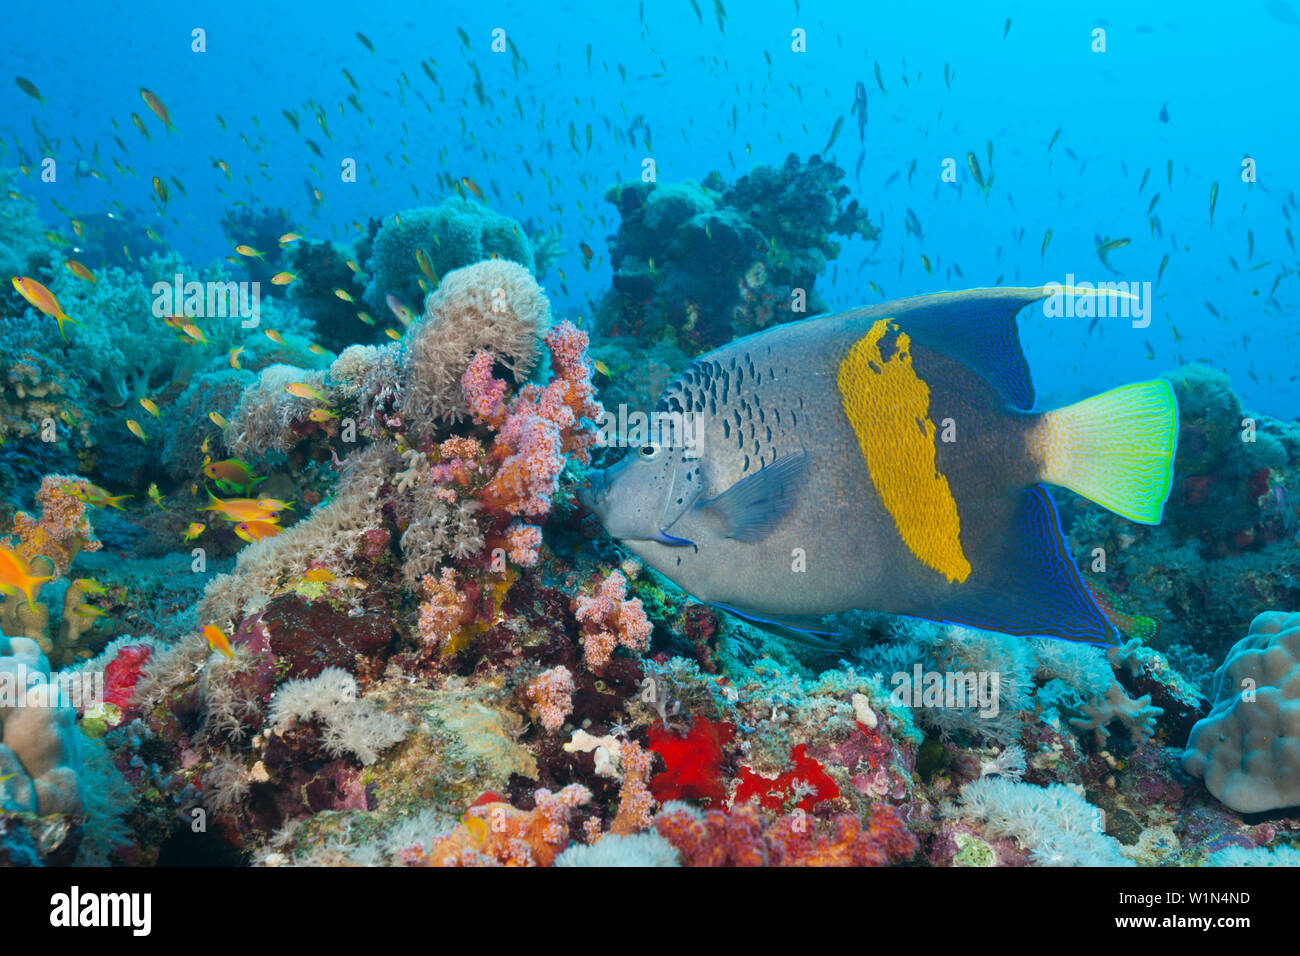 Yellowbar Angelfish, Pomacanthus maculosus, Sanganeb, Red Sea, Sudan Stock Photo